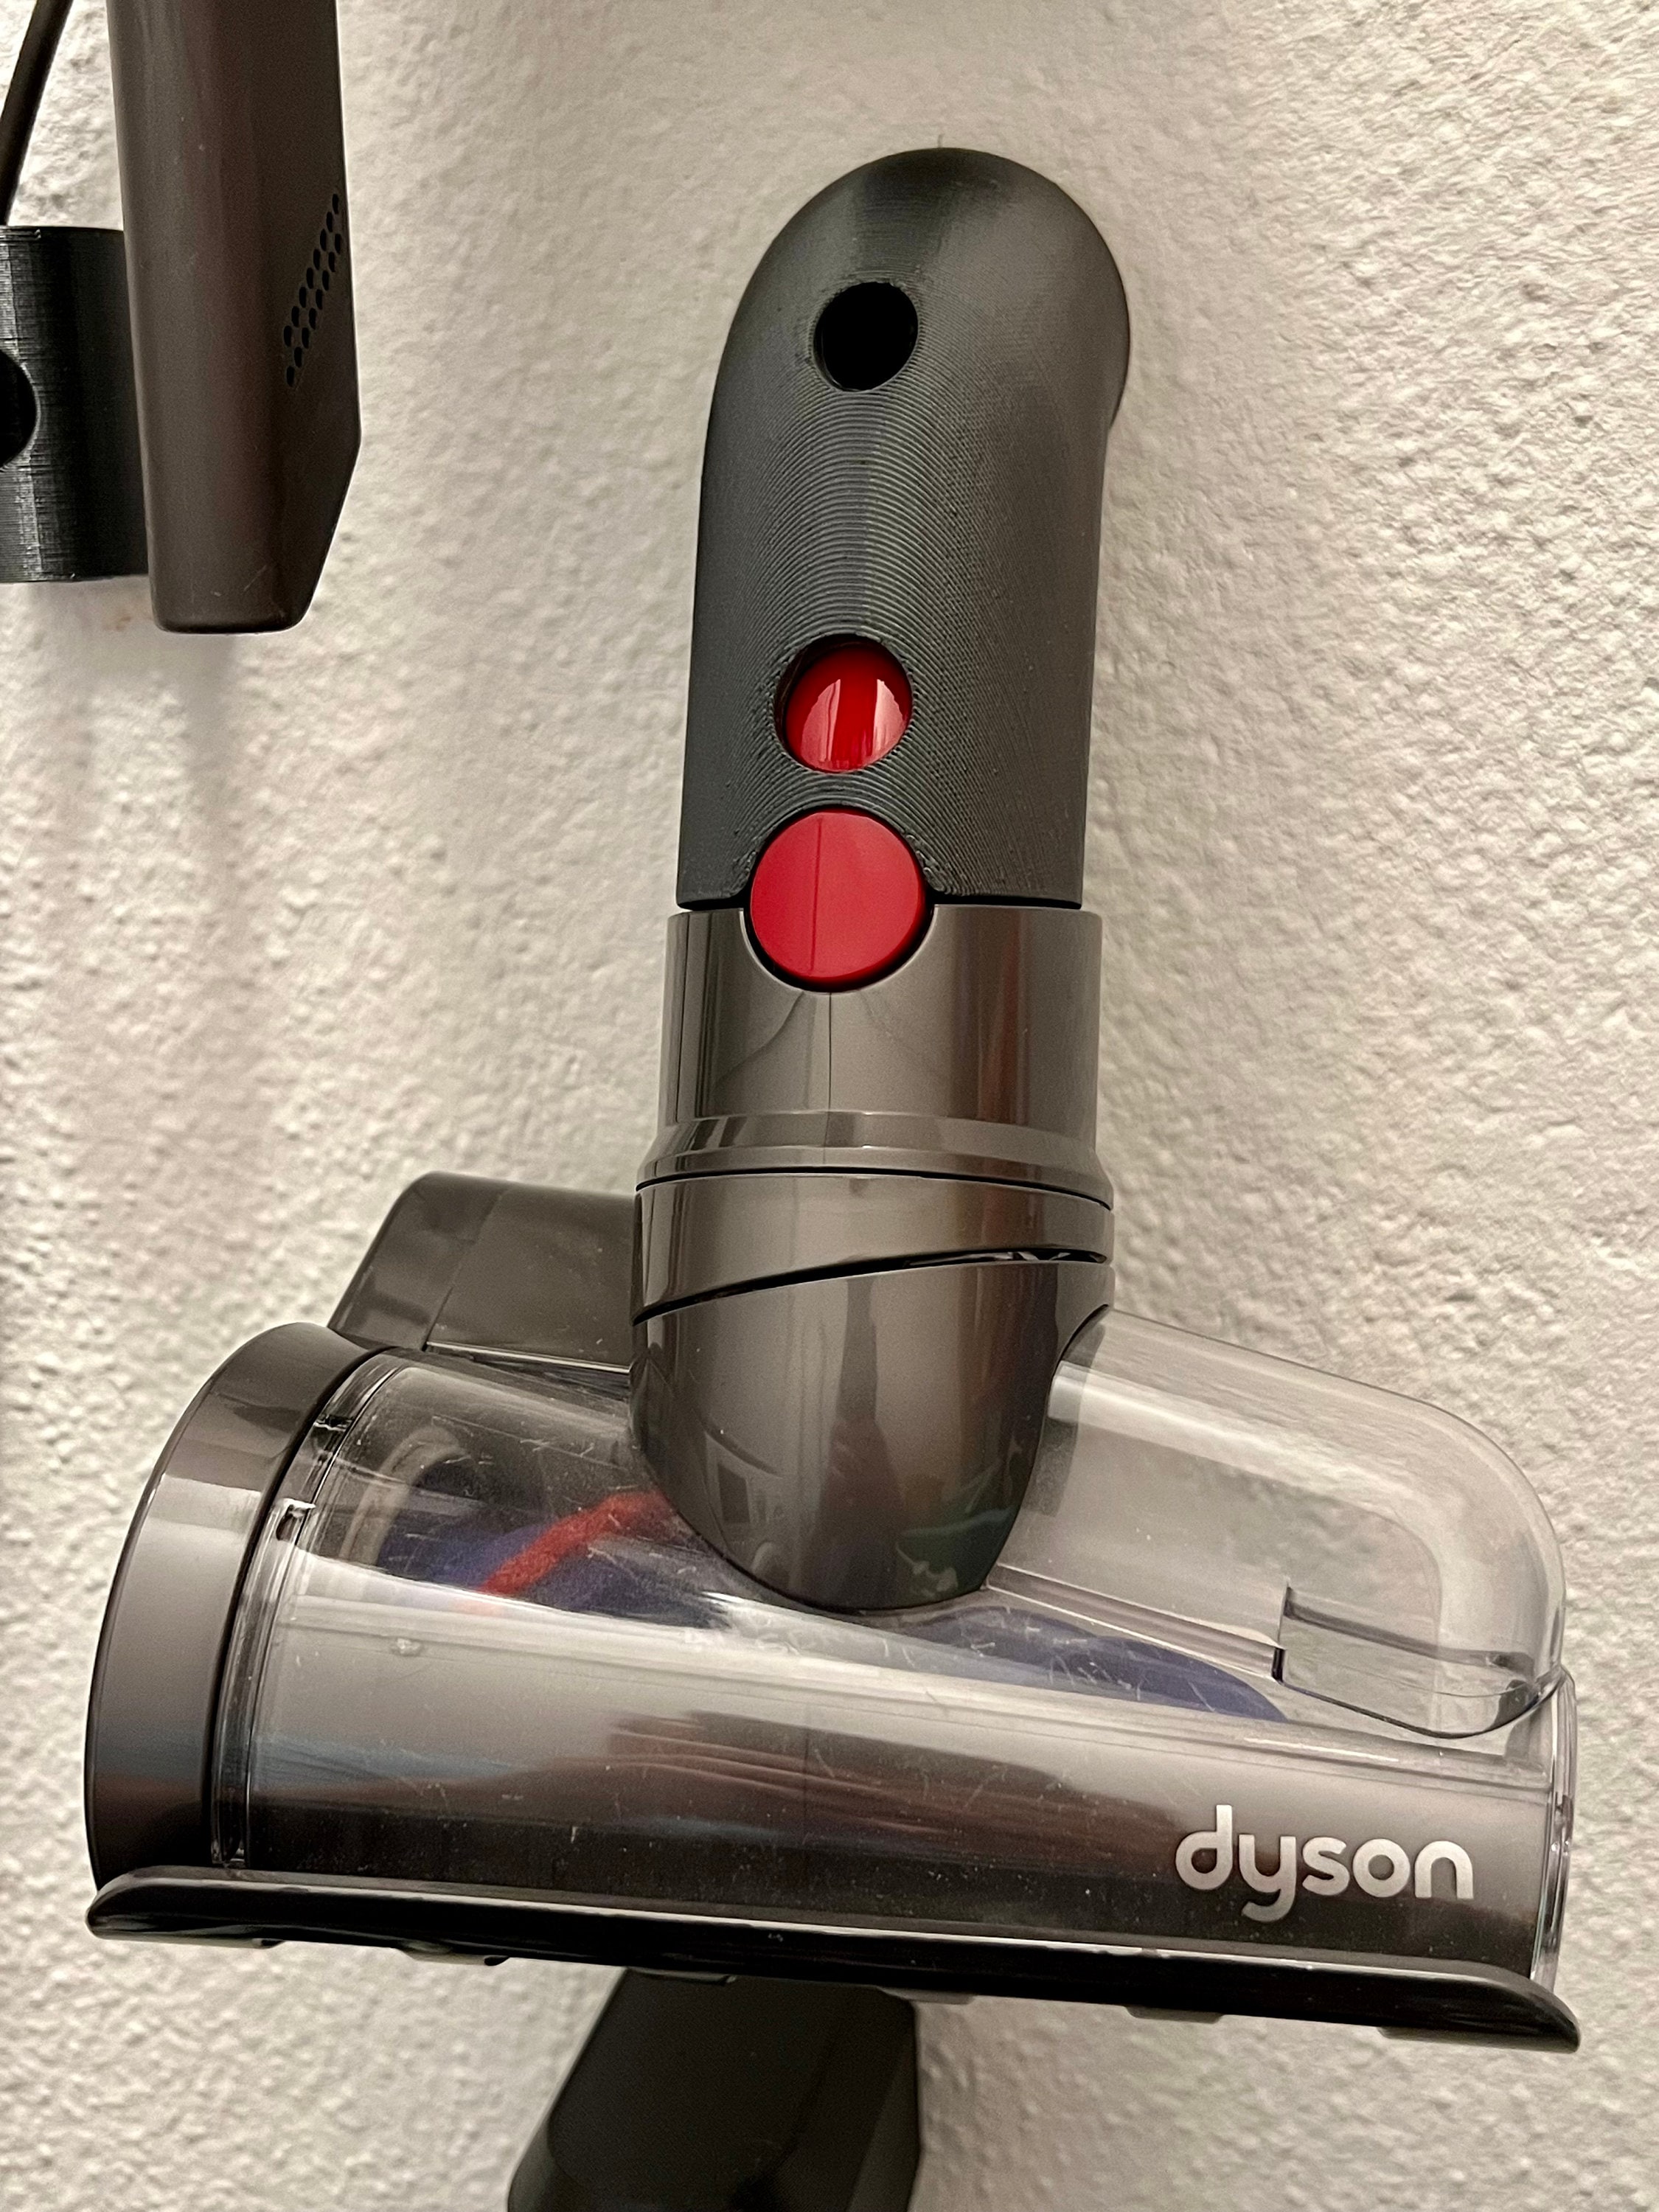 Support pour aspirateur jouet Dyson adapté à Cadson -  France